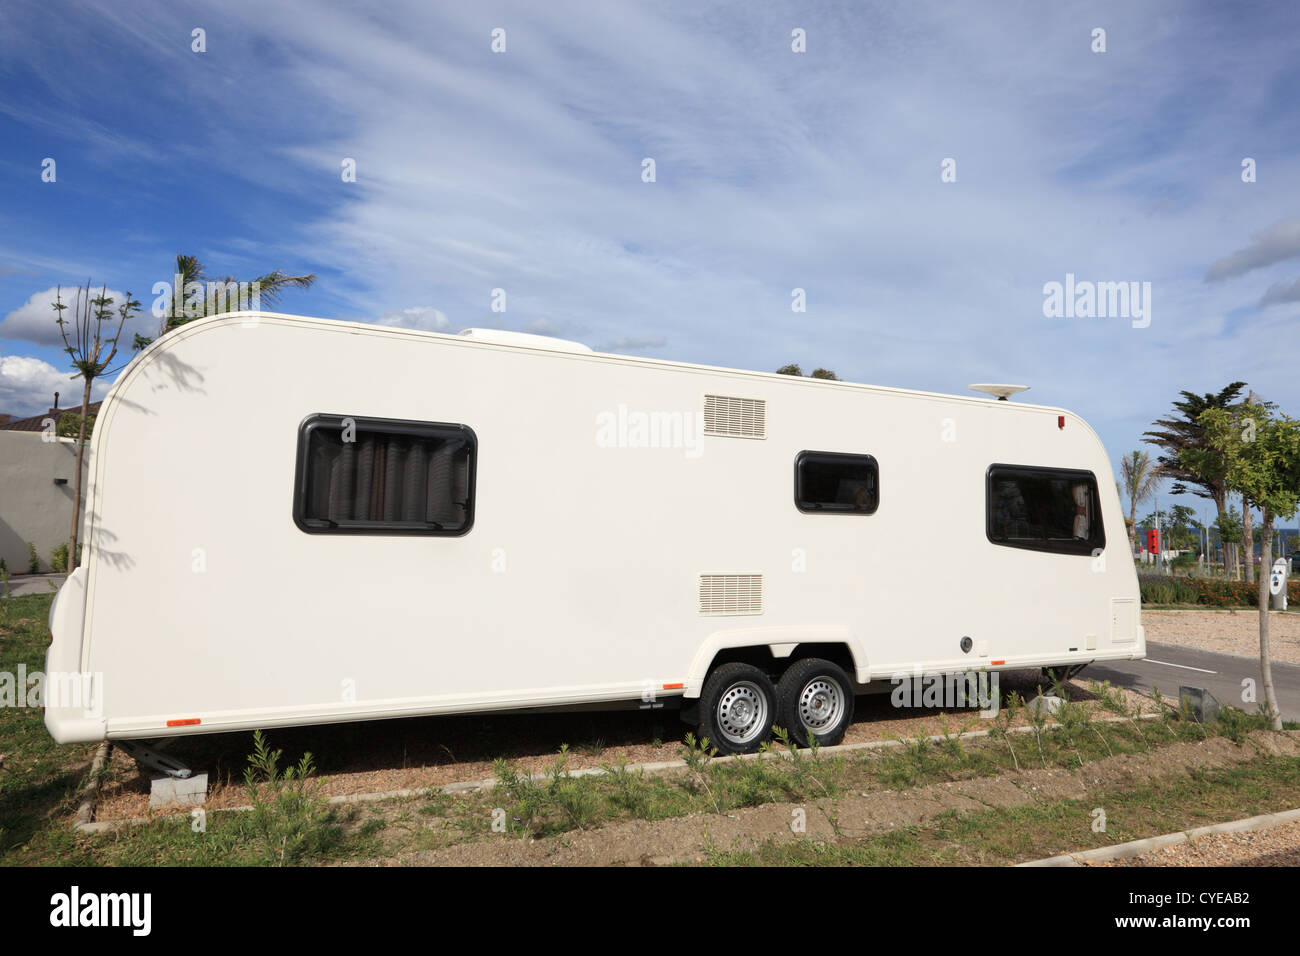 Grande caravane sur un camping Banque D'Images